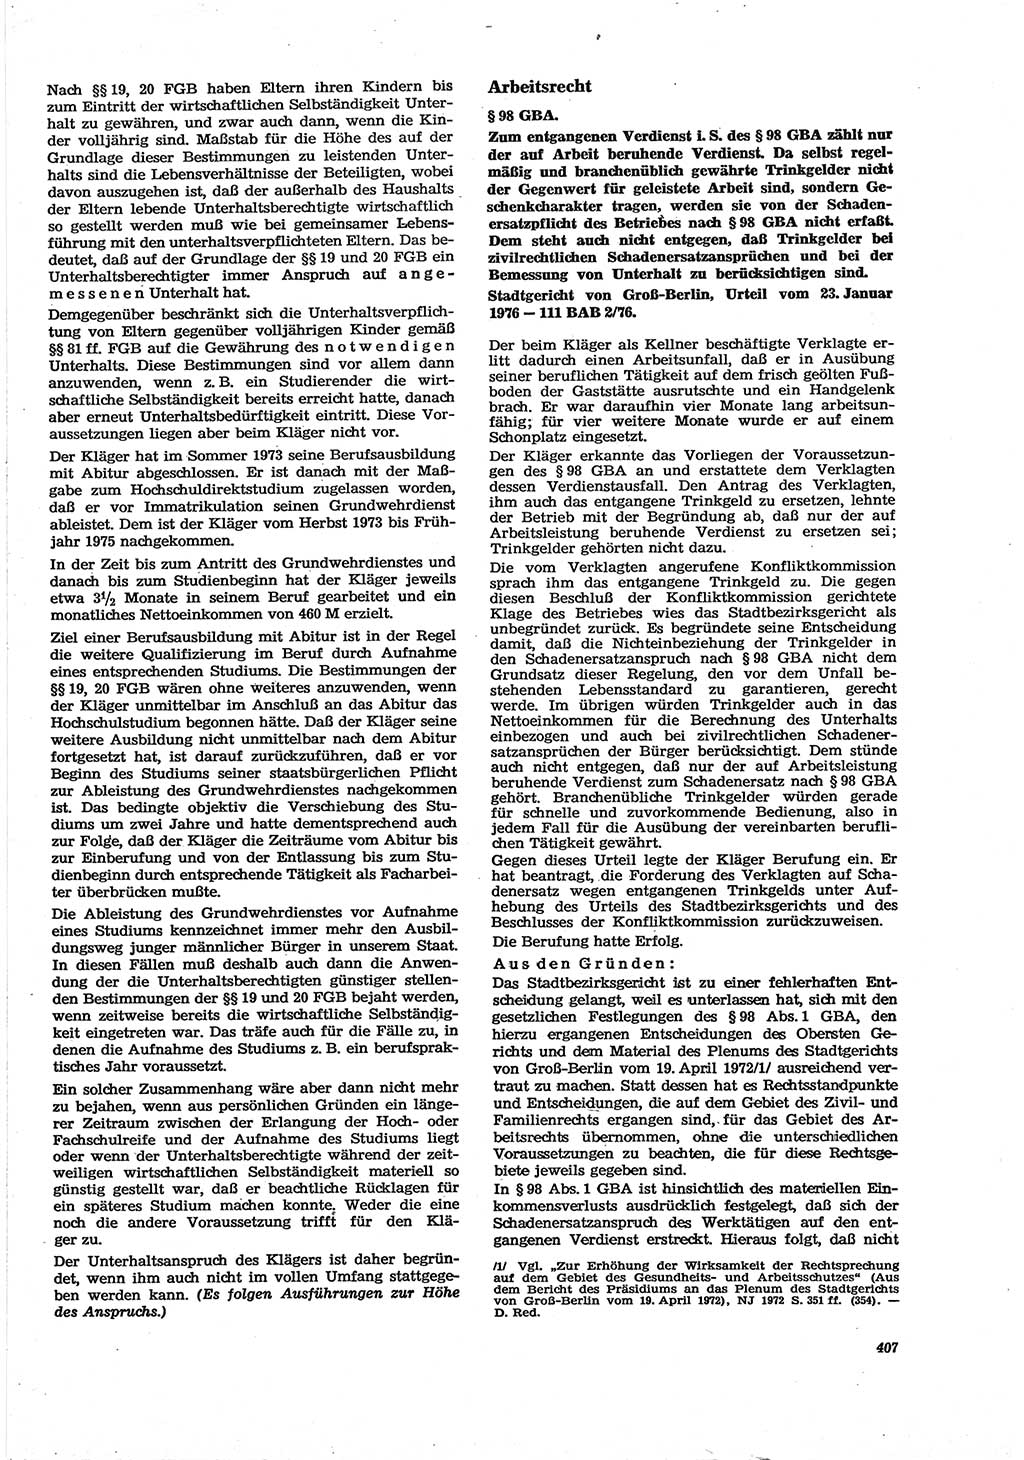 Neue Justiz (NJ), Zeitschrift für Recht und Rechtswissenschaft [Deutsche Demokratische Republik (DDR)], 30. Jahrgang 1976, Seite 407 (NJ DDR 1976, S. 407)